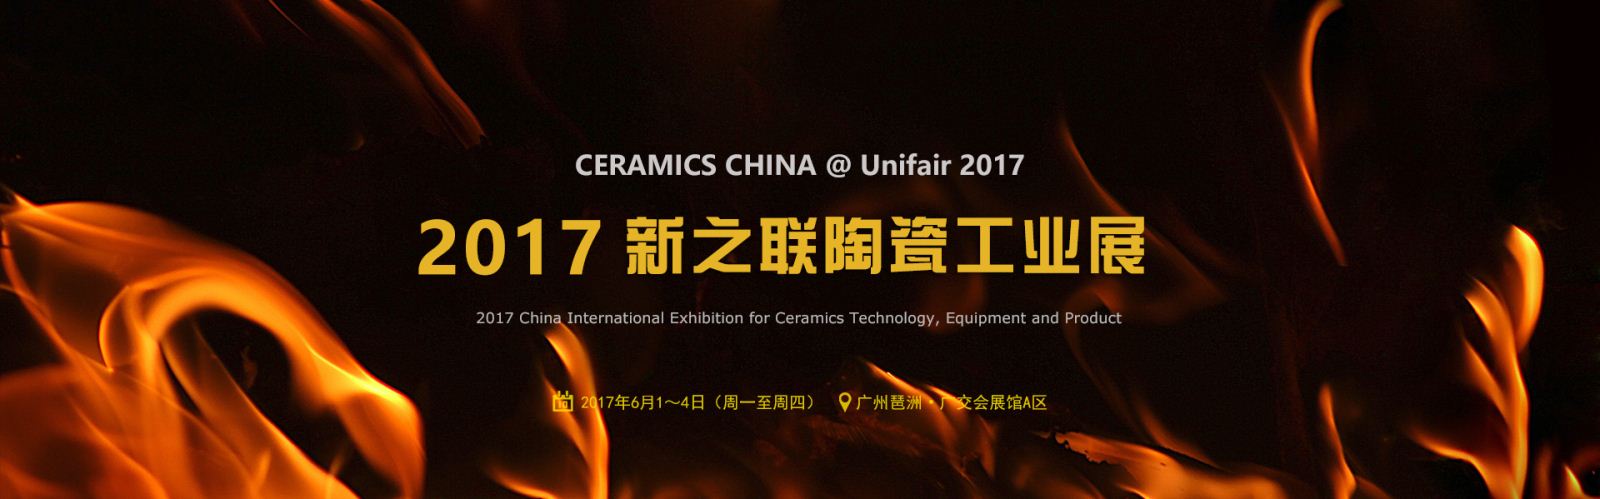 Hội chợ triển lãm Ceramics China 2017